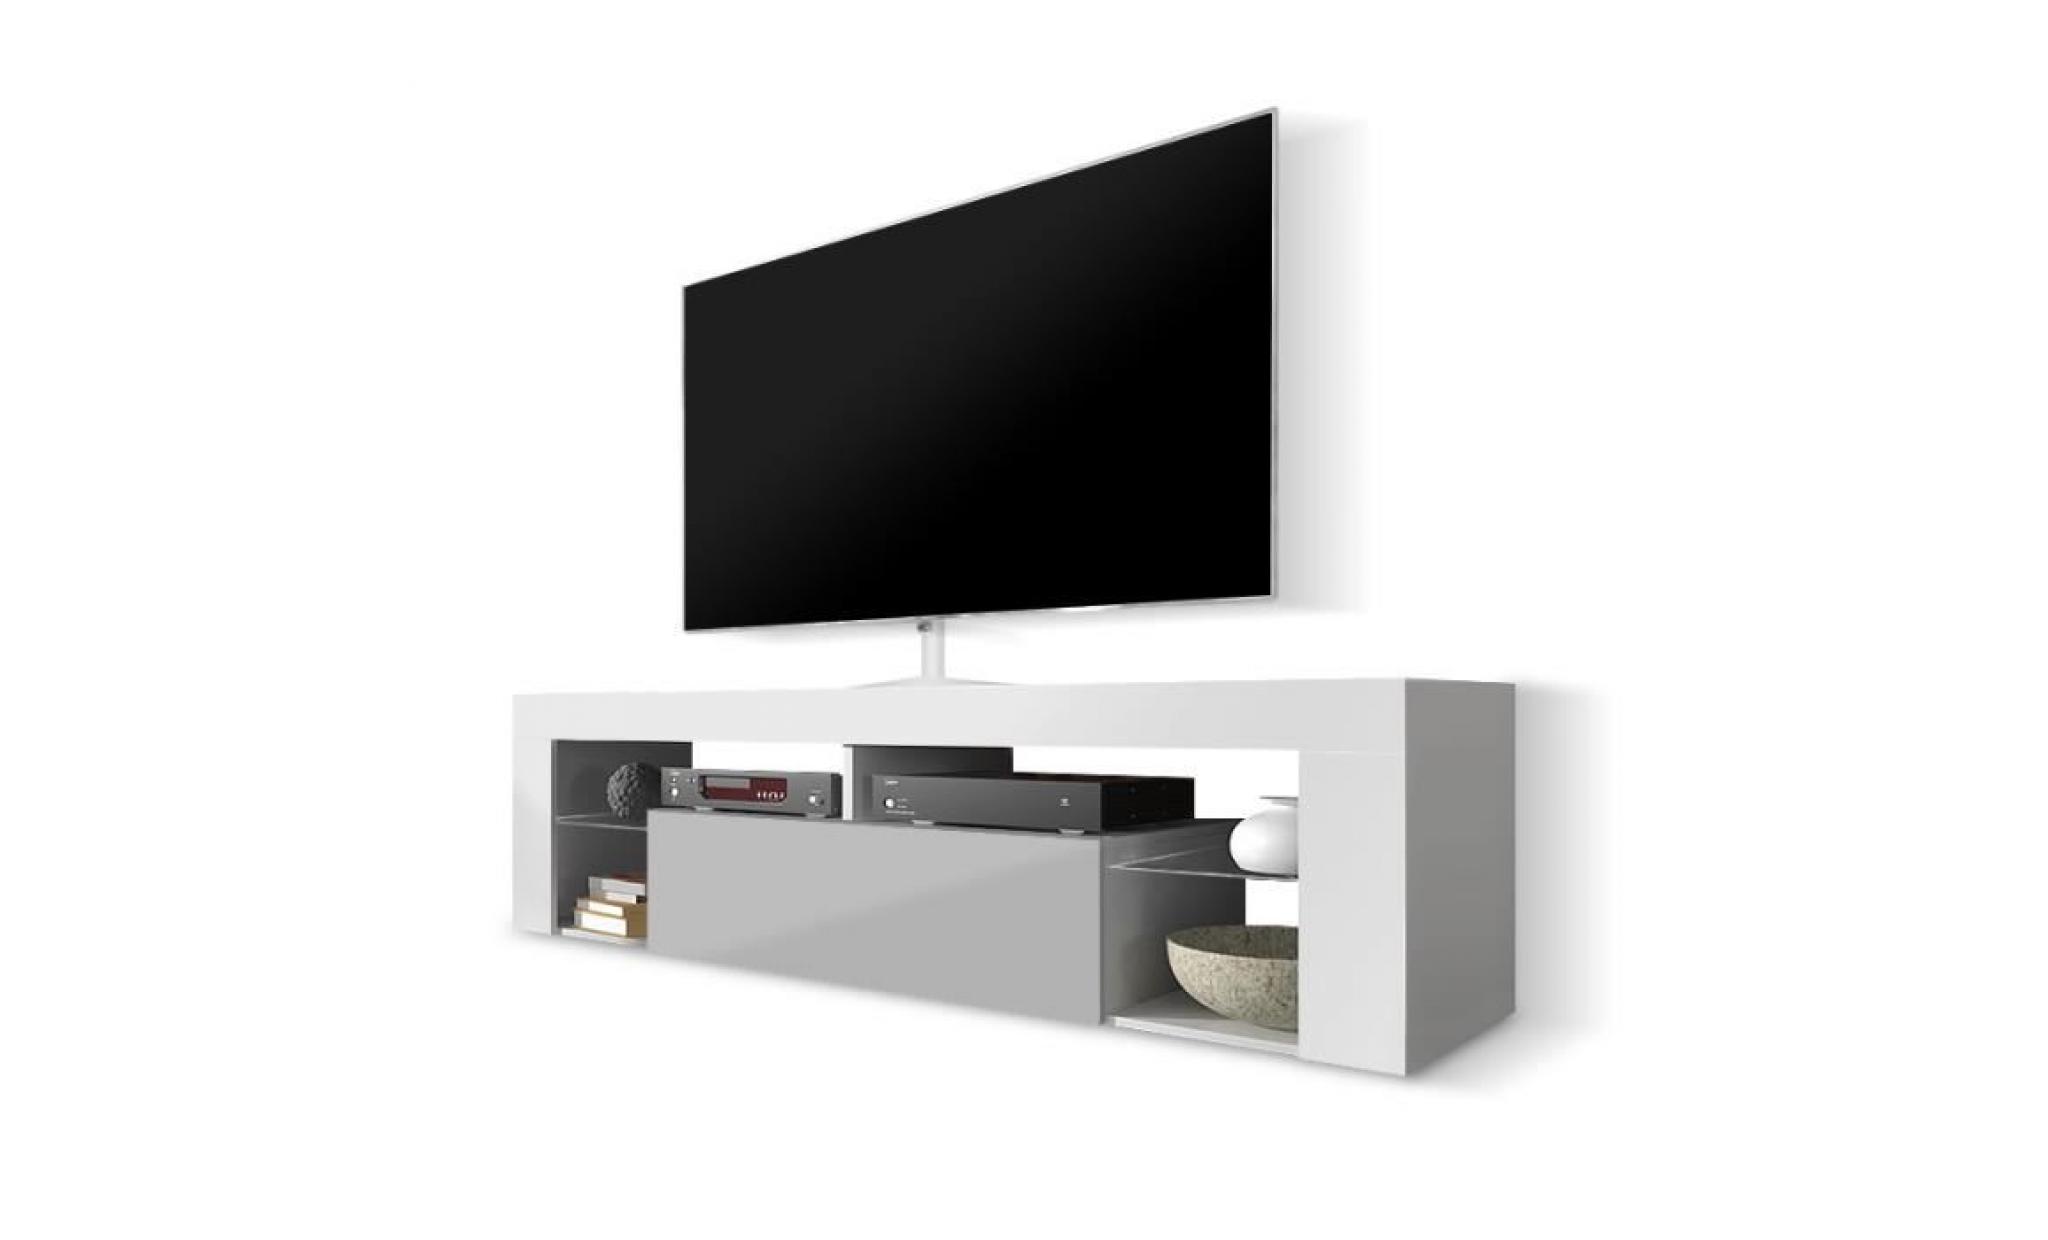 meuble tv / meuble de salon   hugo   140 cm   blanc mat / gris brillant   sans led   style moderne   tablette en verre pas cher